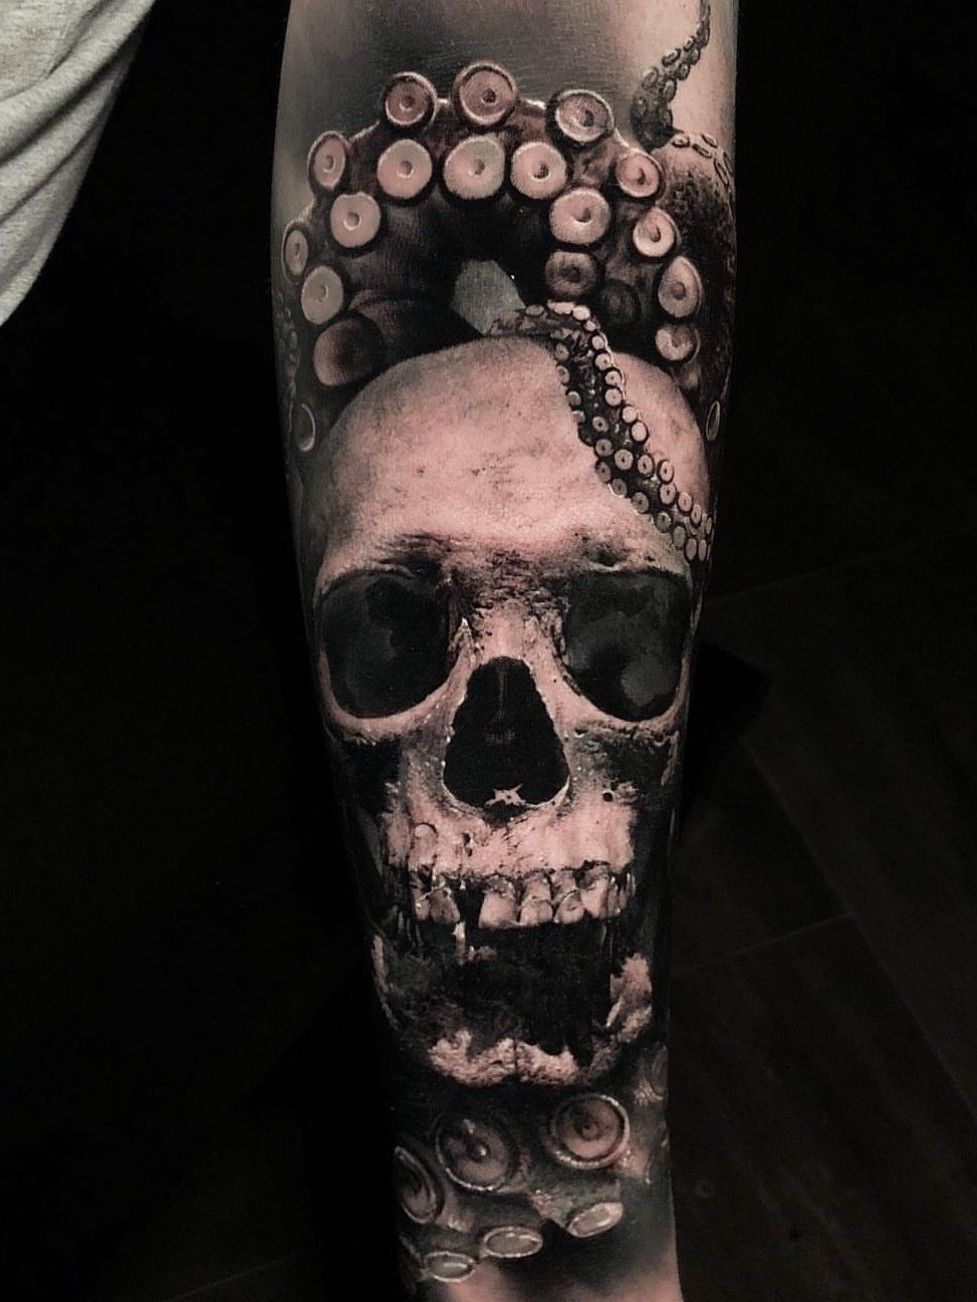 Traditional SkullOctopus done by Matt Crocker at Cobra Custom Tattoo  Plymouth MA  rtattoos